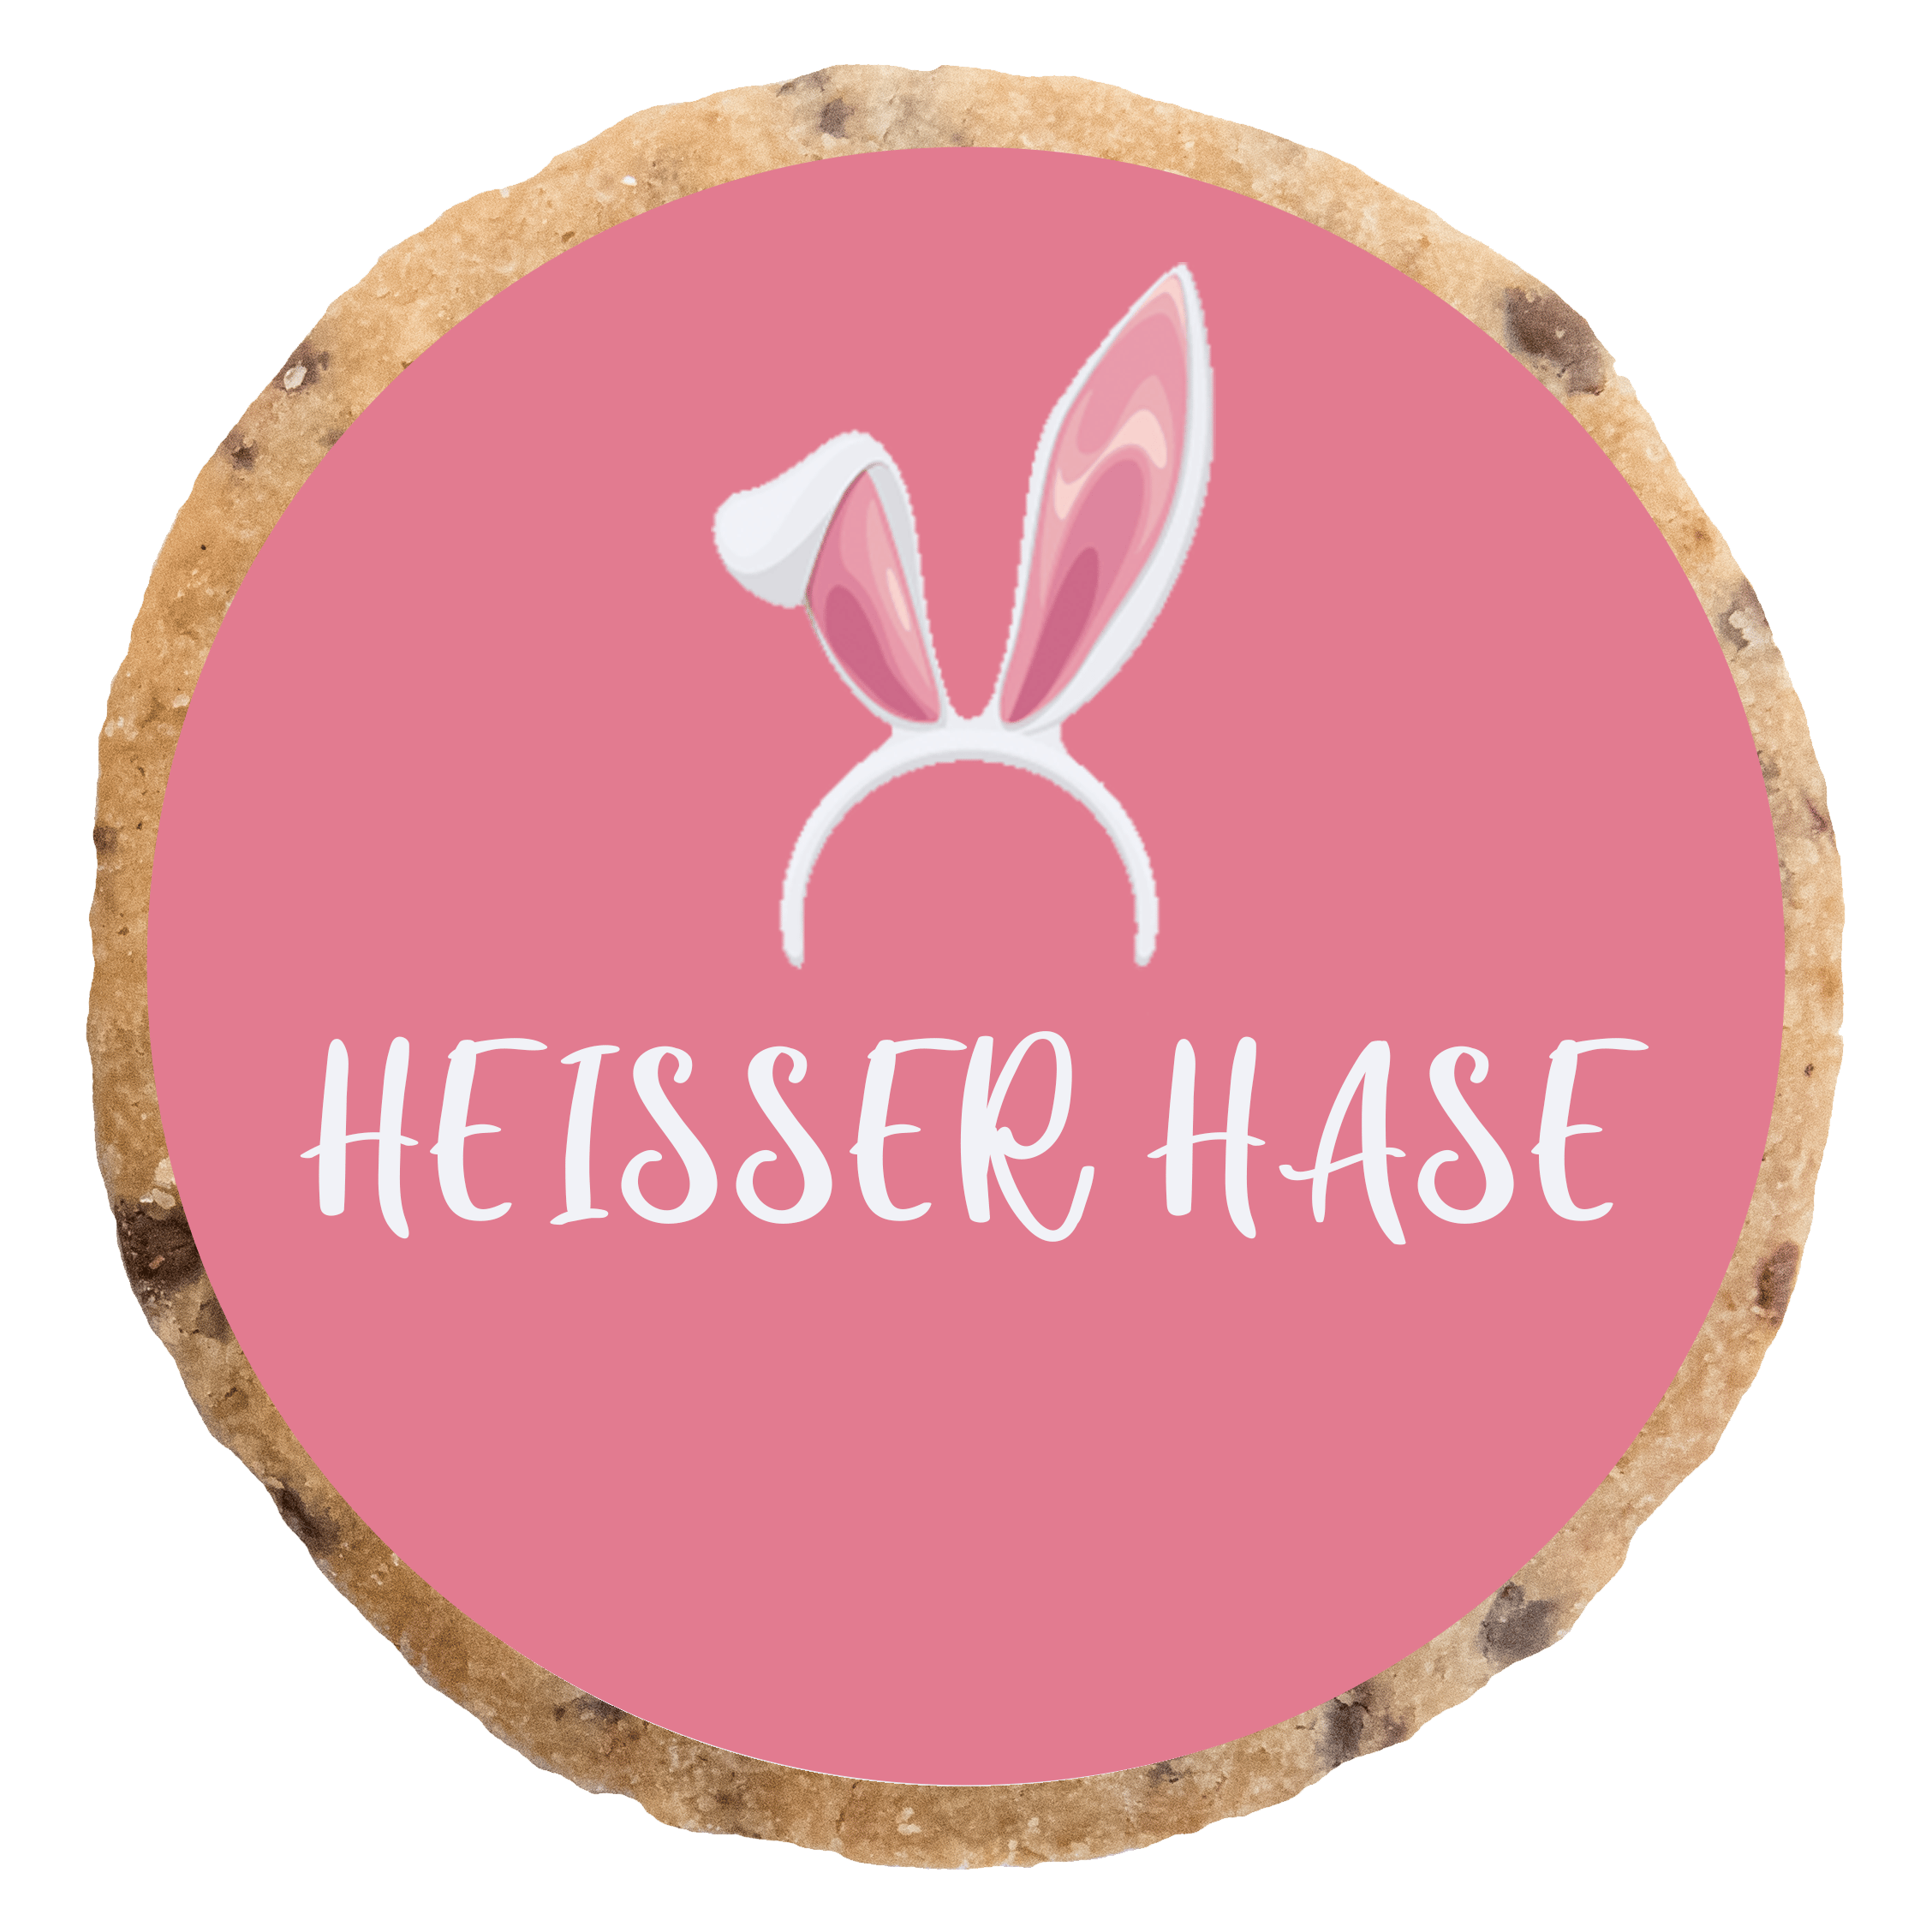 "Heisser Hase" MotivKEKS